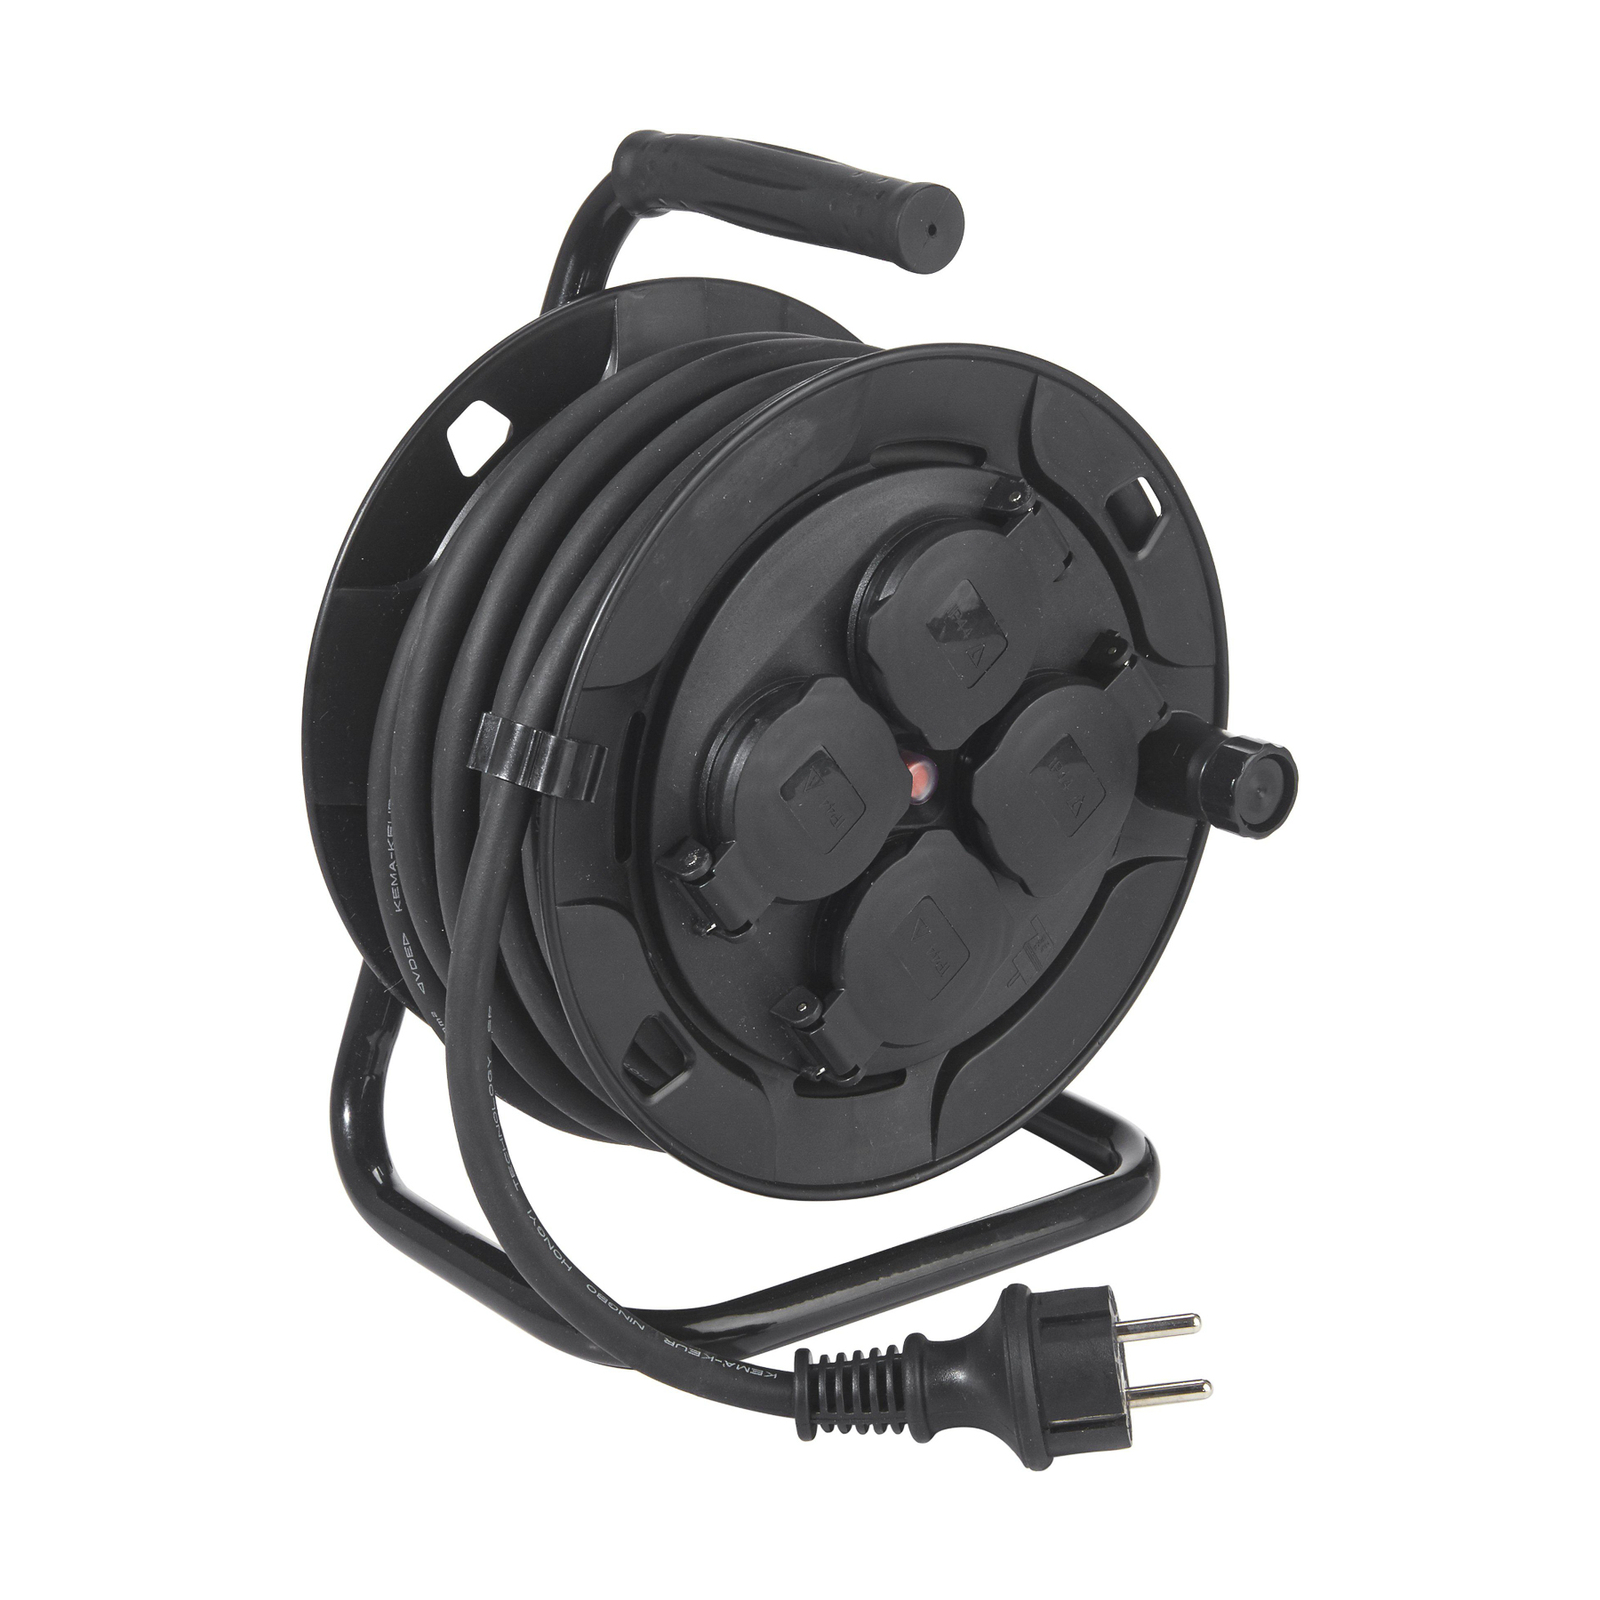 PR Home kabeltrommel utendørs, 4 stk, svart